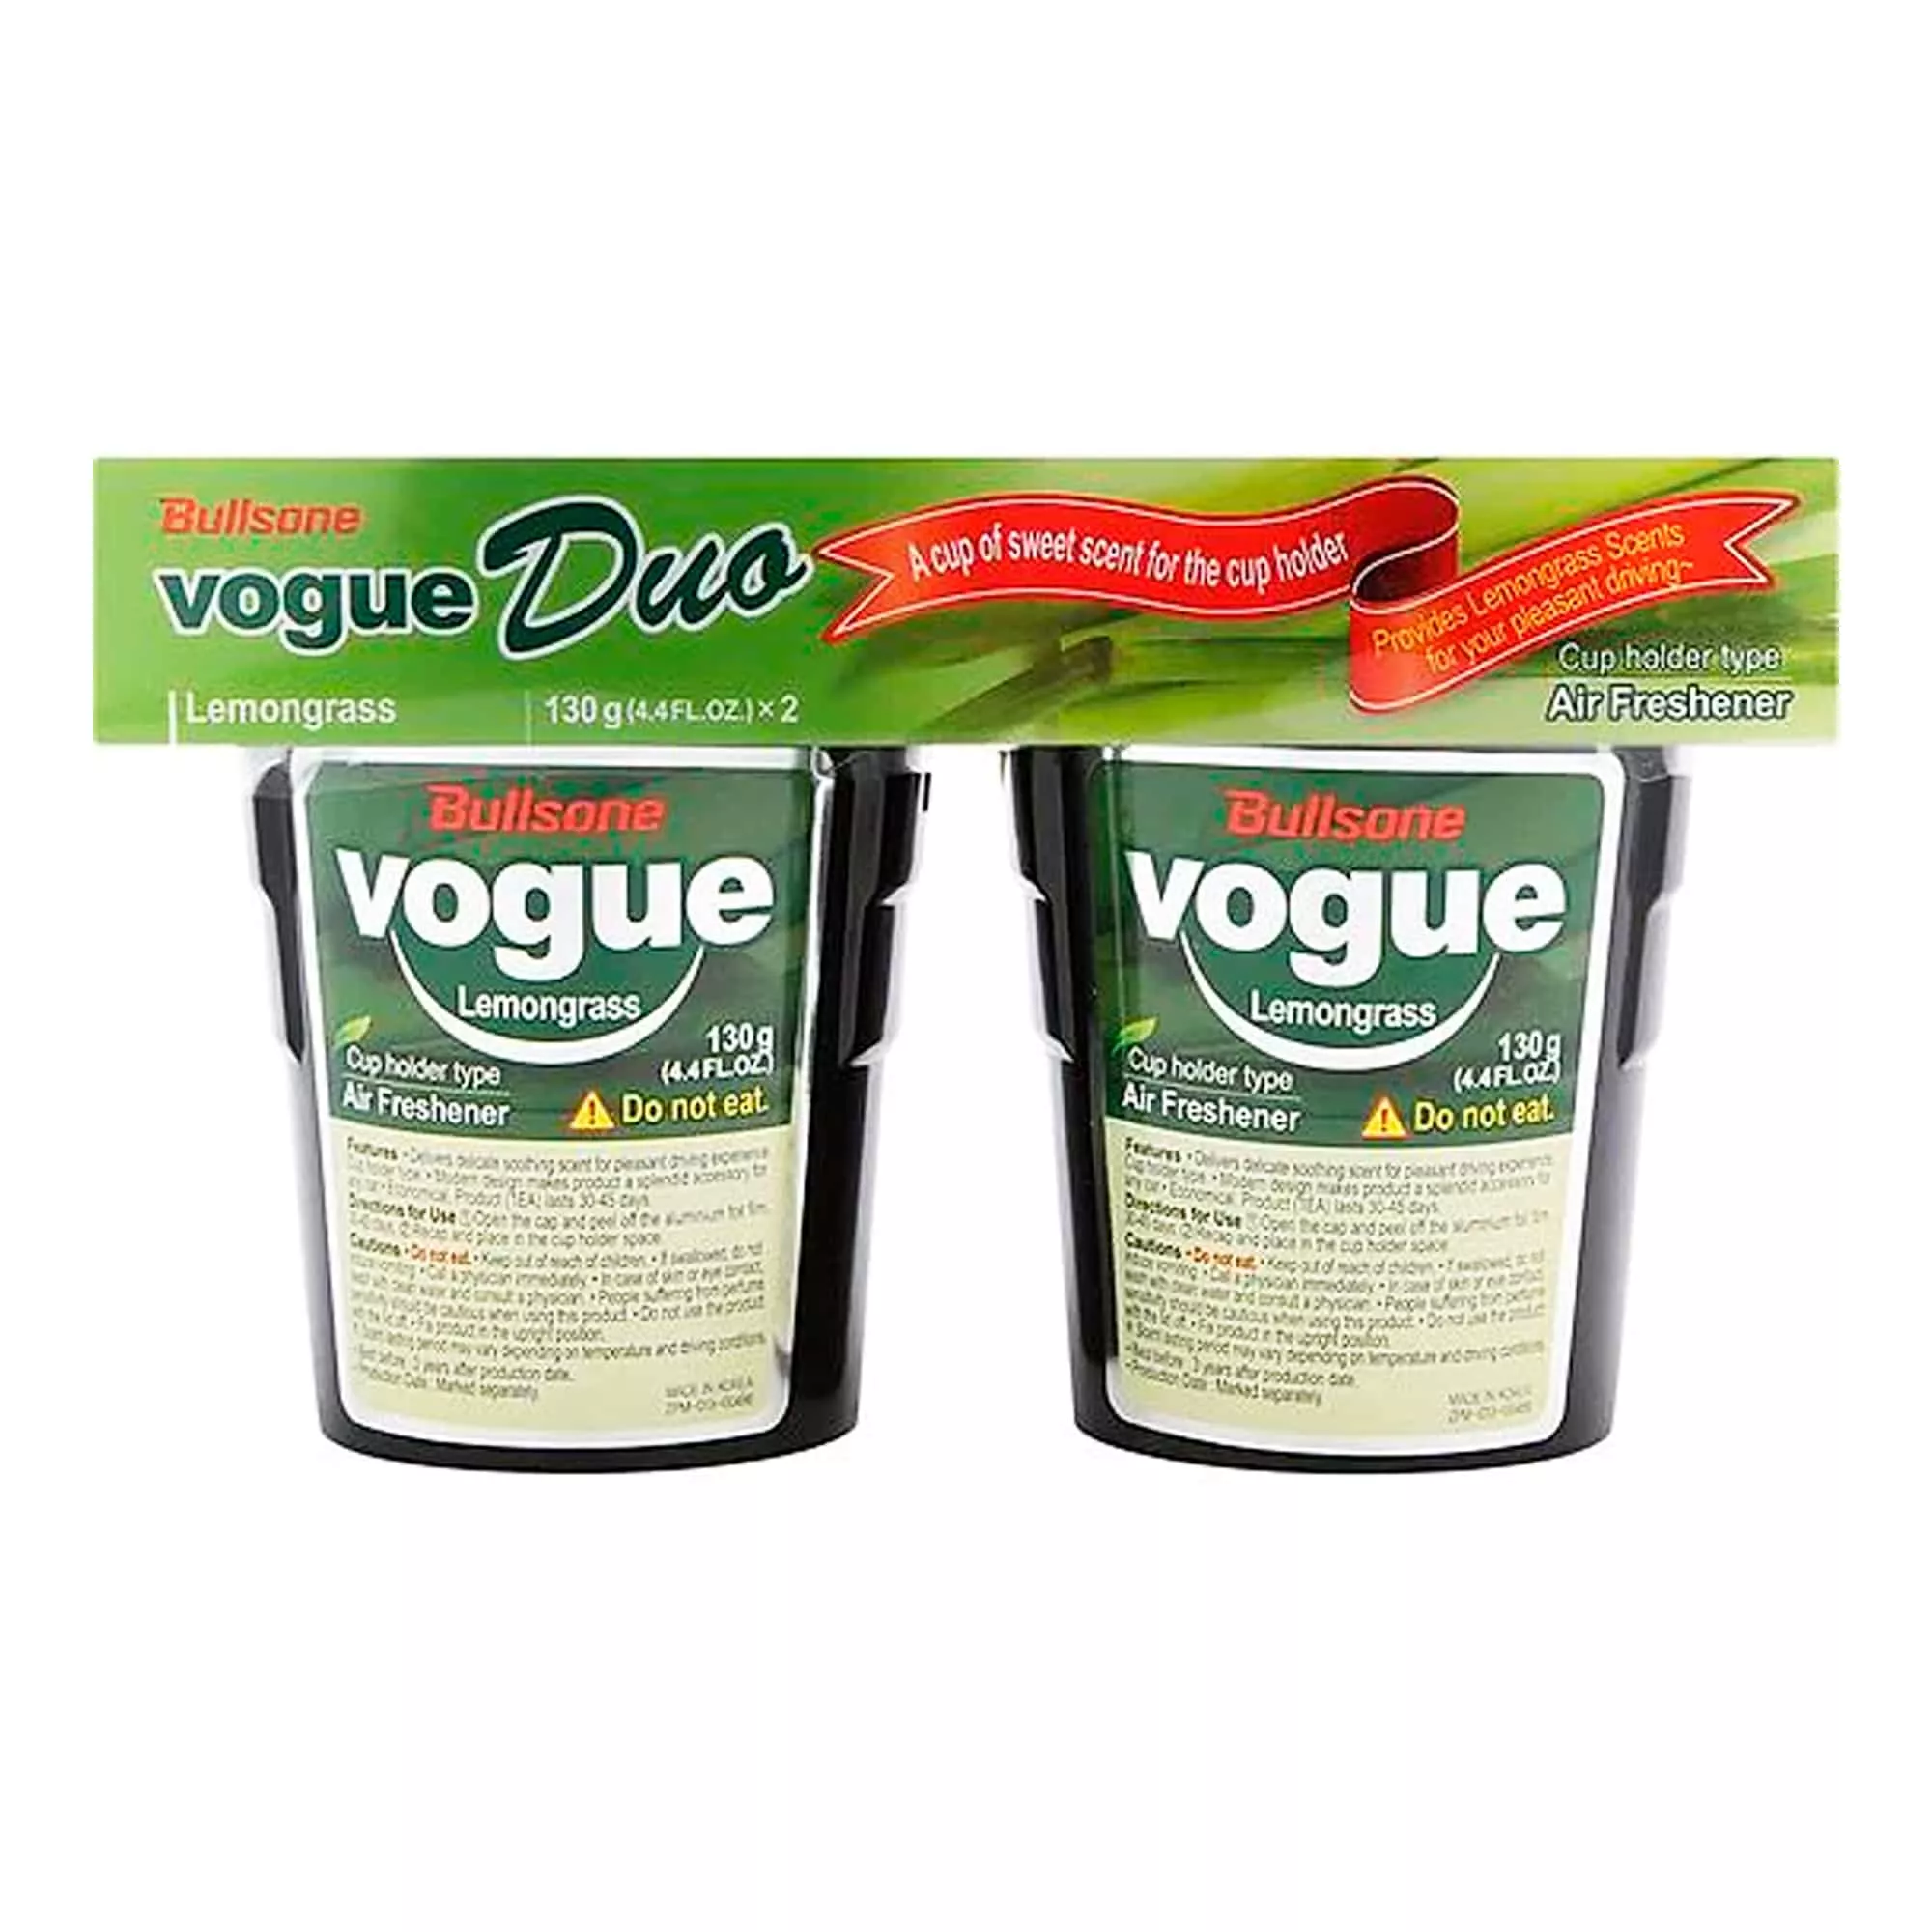 Освежитель воздуха Bullsone Vogue Duo - Lemongrass 130г x 2шт (402257)